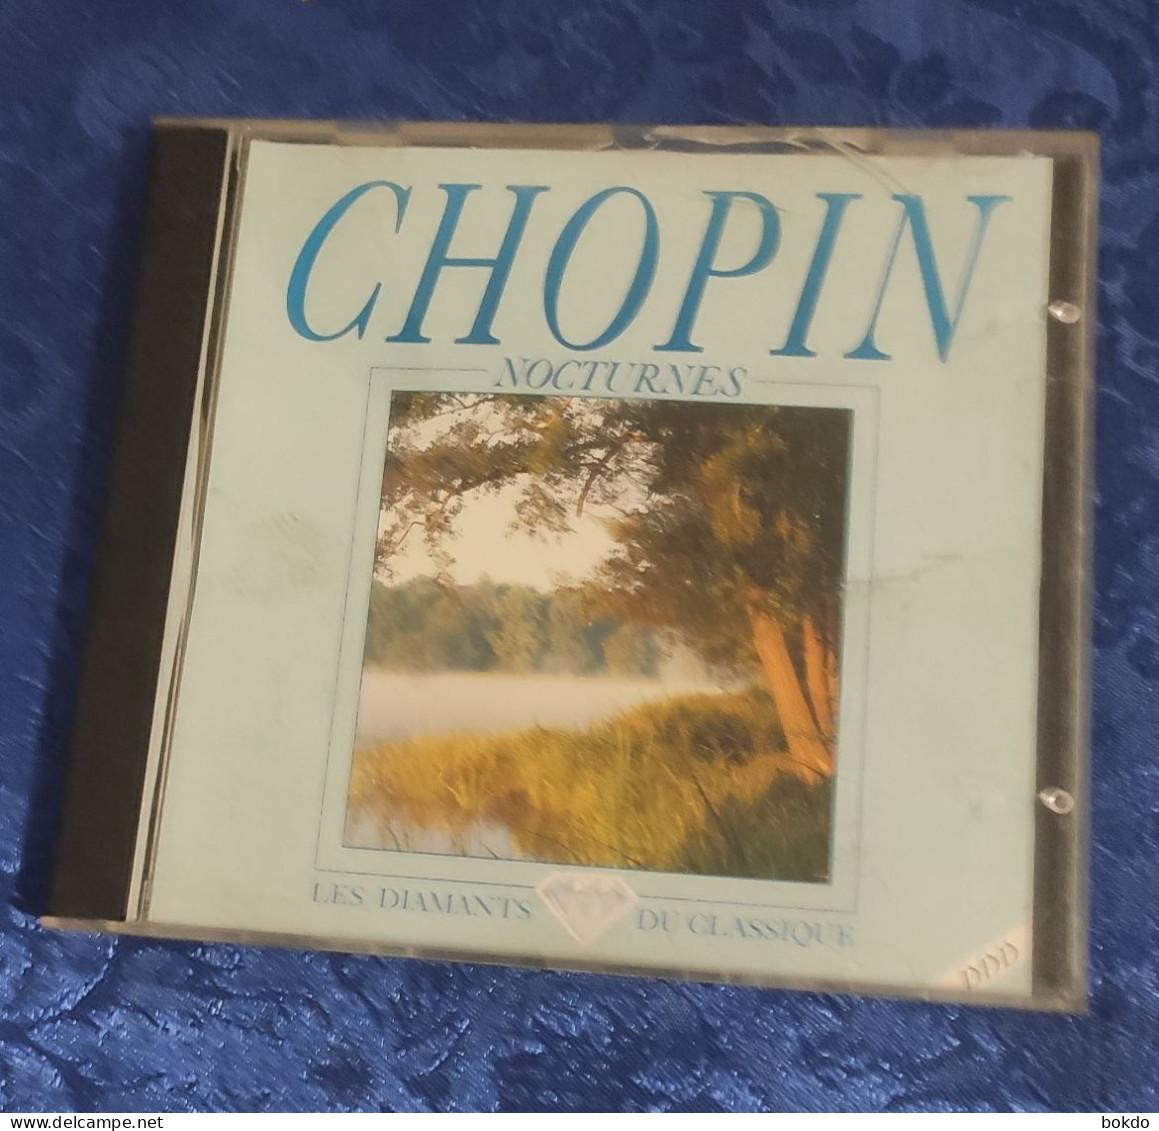 CHOPIN - Nocturnes - Les Diamants Du Classique - Classical